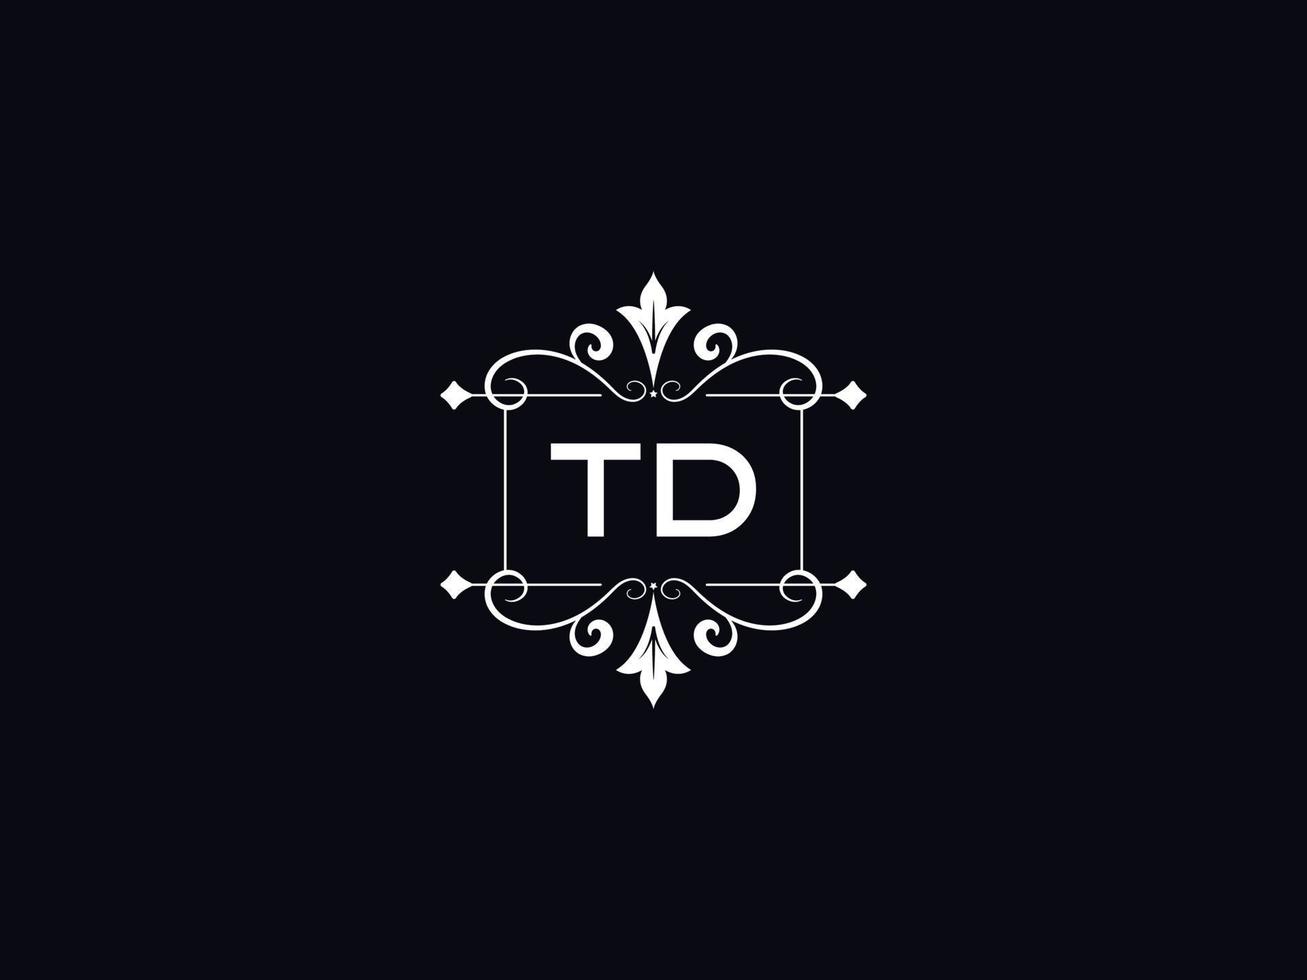 professionelles td-logo, minimalistisches td-luxus-logo-briefdesign vektor